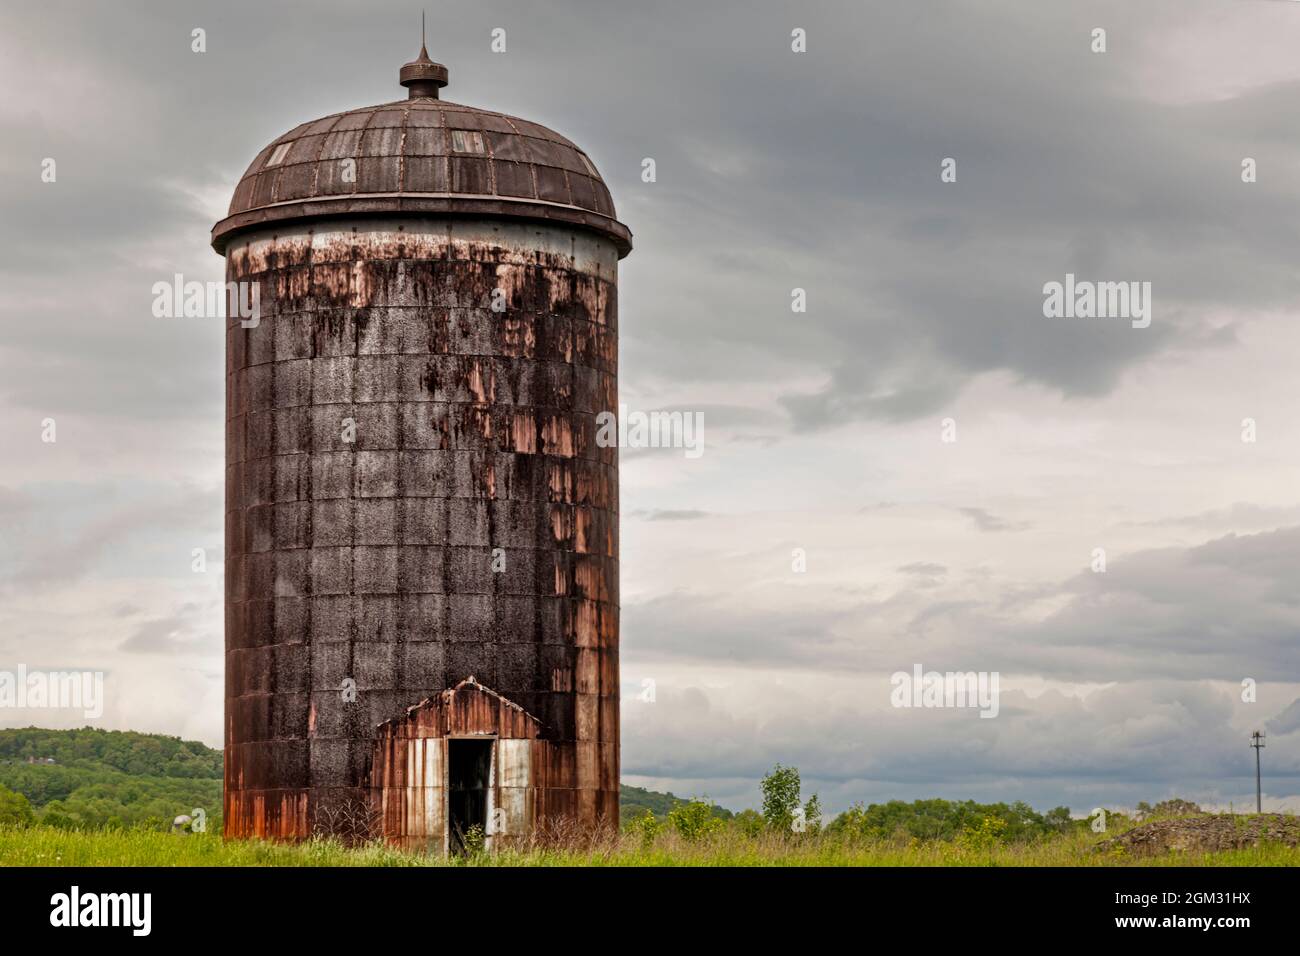 Rustikale Silo - Blick auf eine verrostete Silo in einem Bauernhof in Sussex County, New Jersey, dieses Bild in Farbe als auch in Schwarz/Weiß. Anzeigen, Hinzufügen Stockfoto